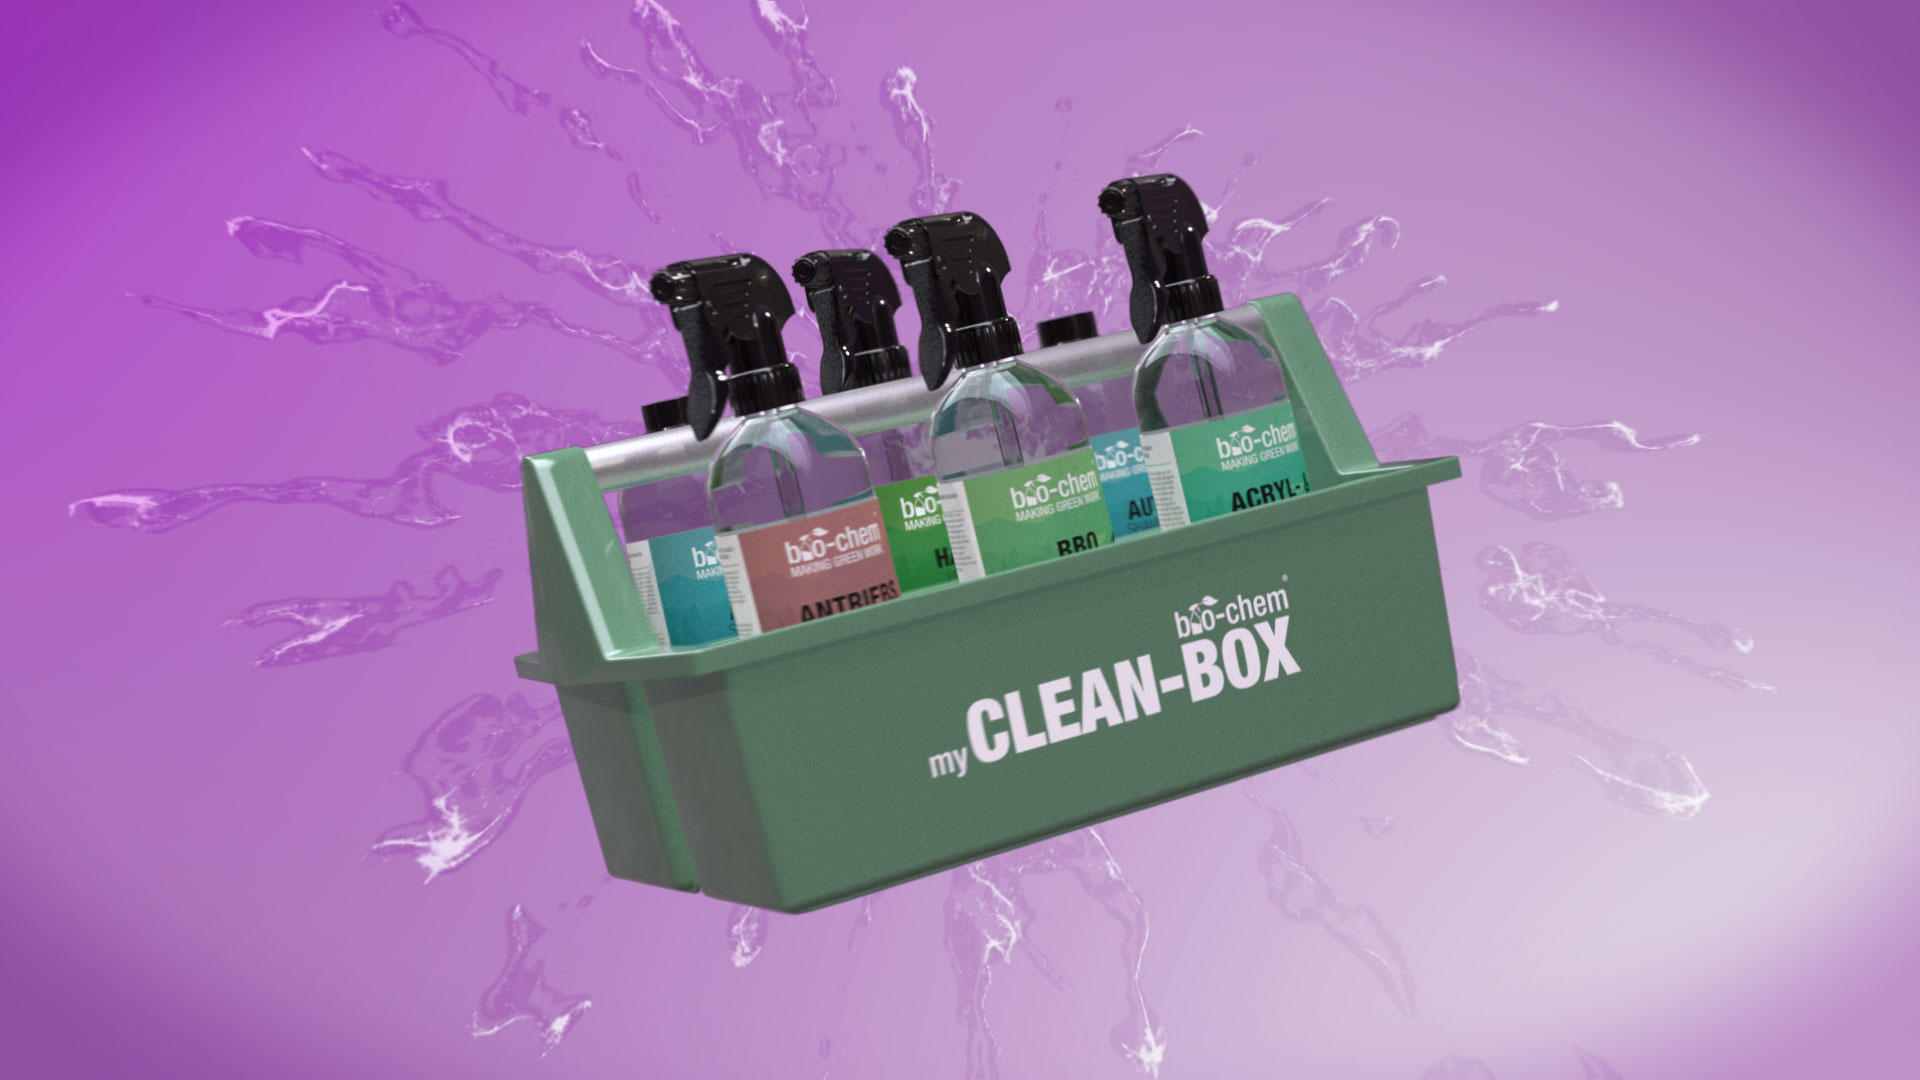 CLEAN-BOX